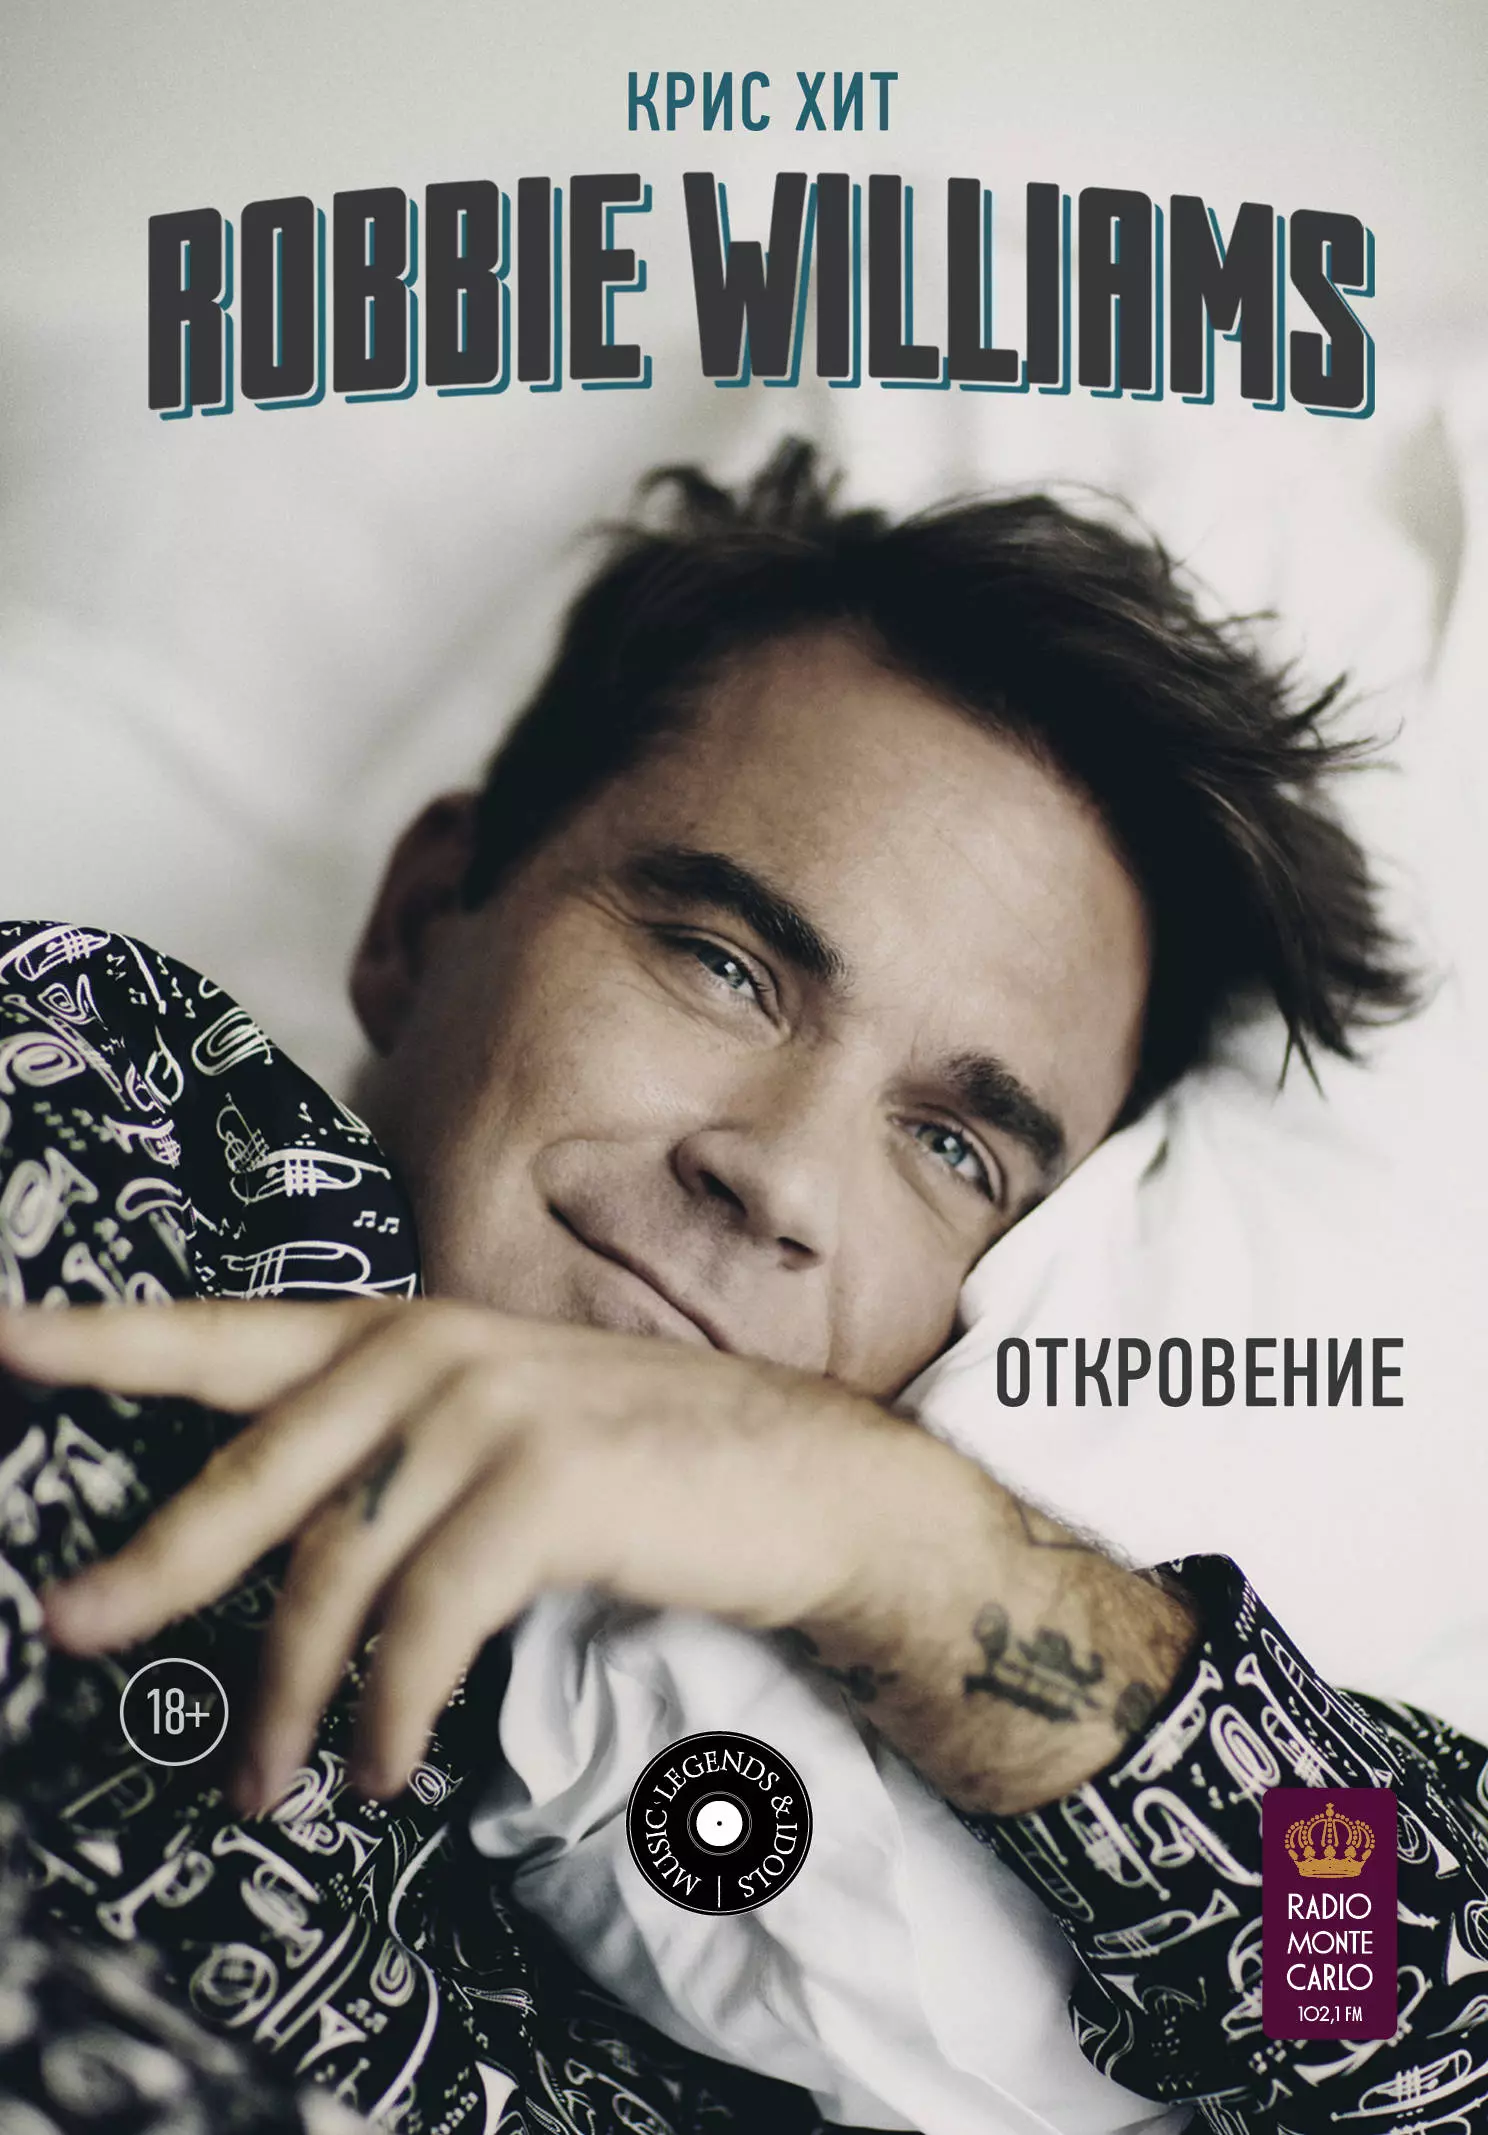  - Robbie Williams: Откровение